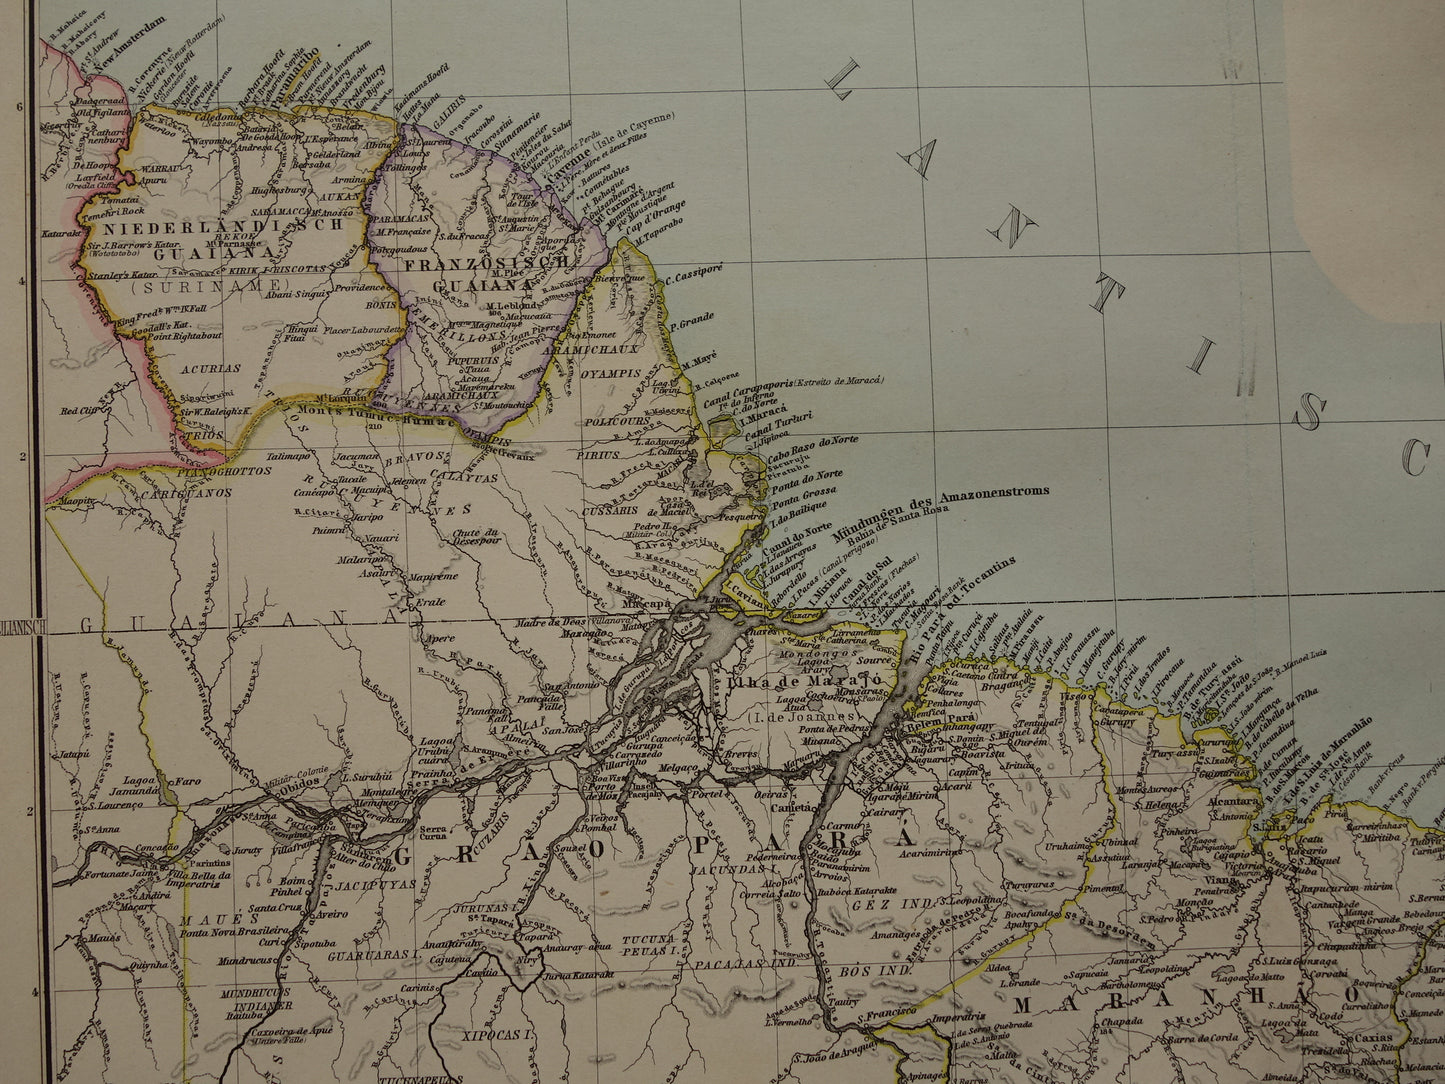 ZUID-AMERIKA Grote oude kaart uit 1885 van continent - originele antieke landkaart met jaartal - historische kaarten van Zuid-Amerika XL